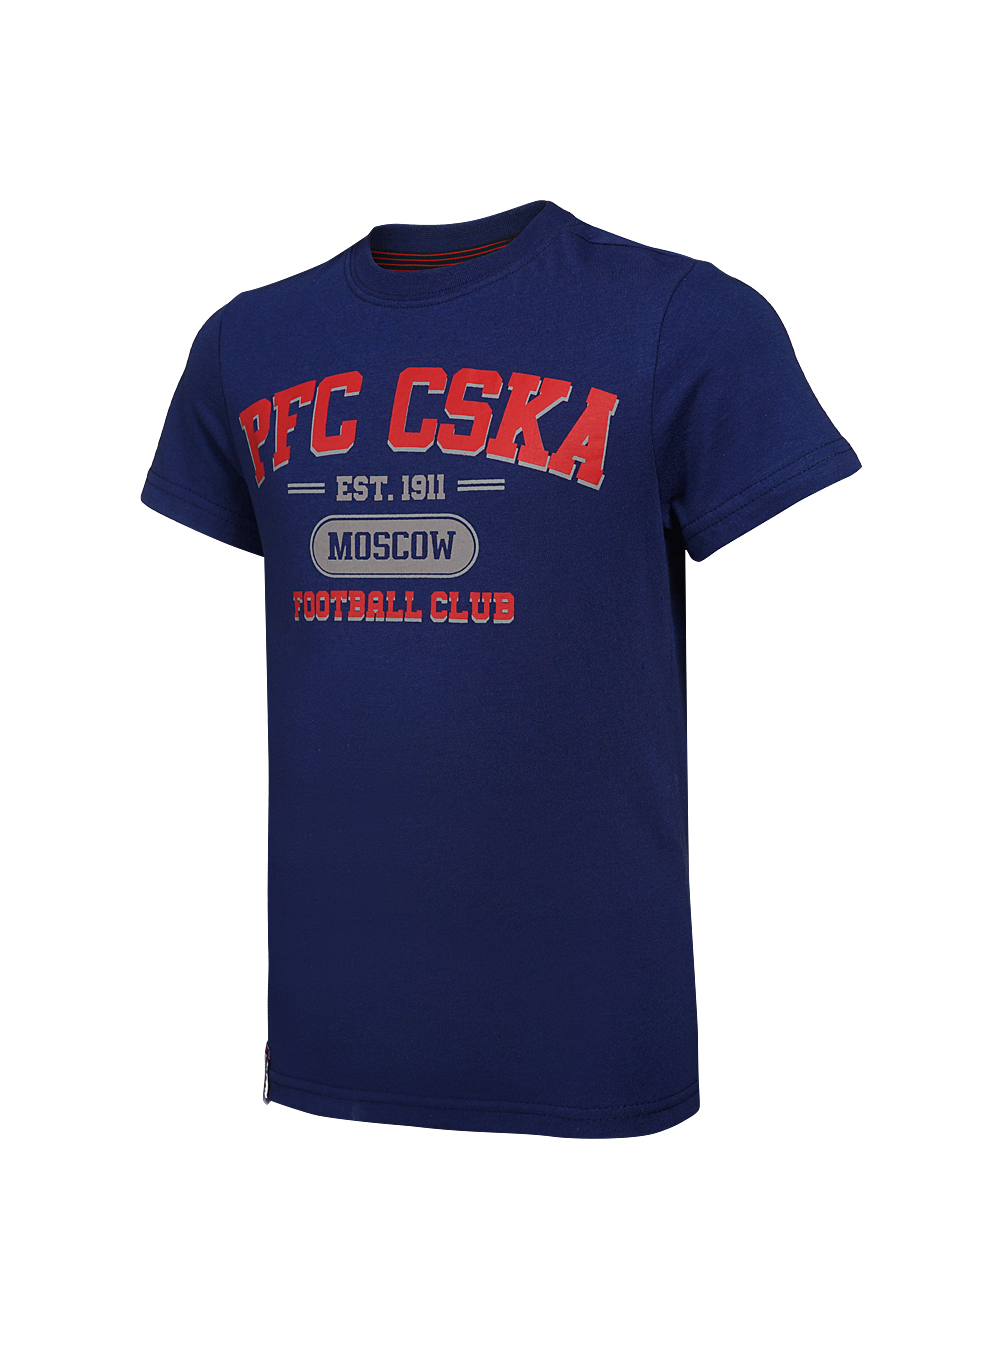 Купить Футболка детская  PFC CSKA Moscow синяя (146) по Нижнему Новгороду